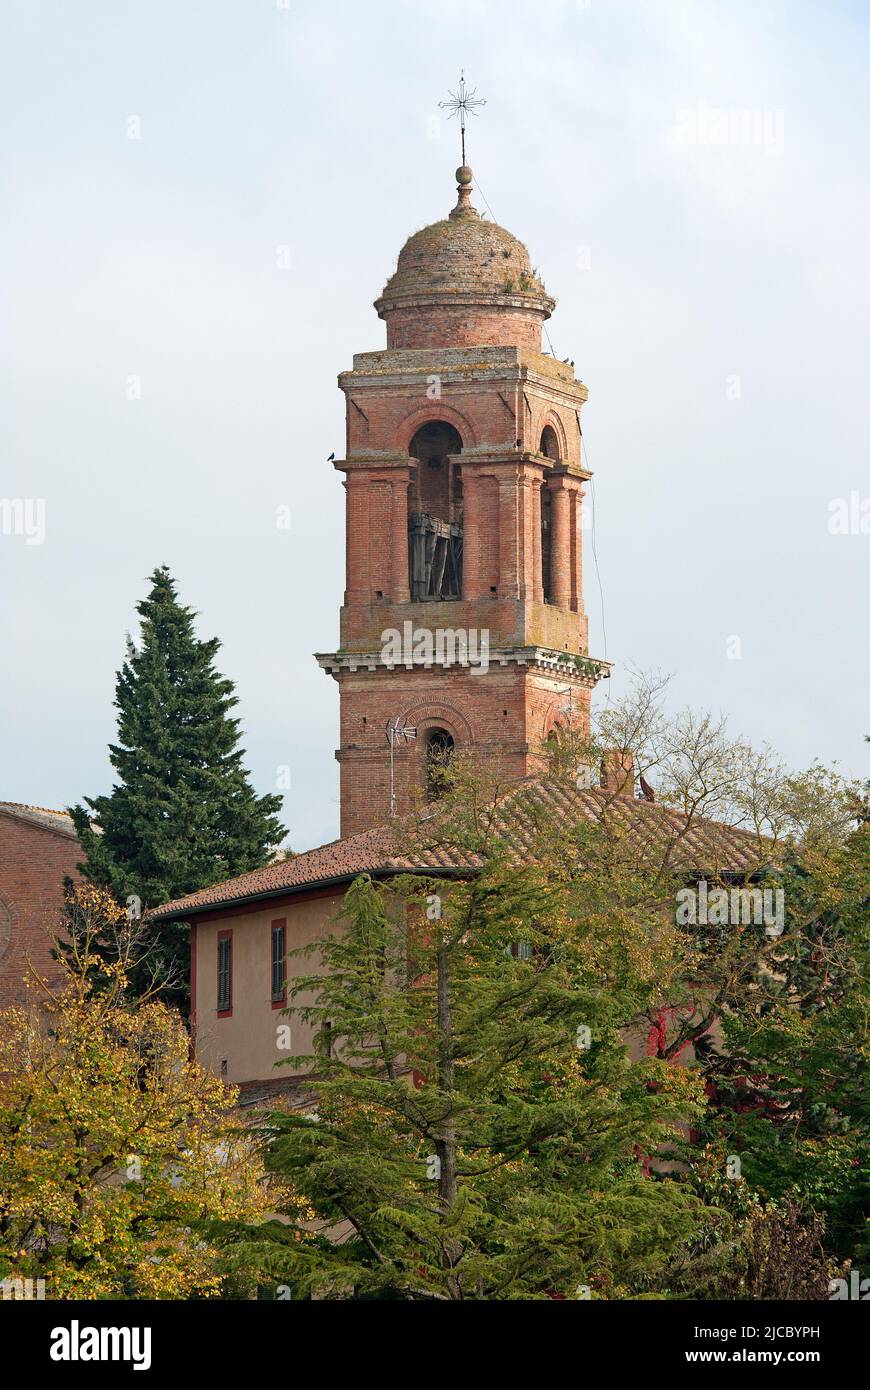 Bell tower of Santa Maria dei Servi church, Città della Pieve, Umbria, Italy Stock Photo